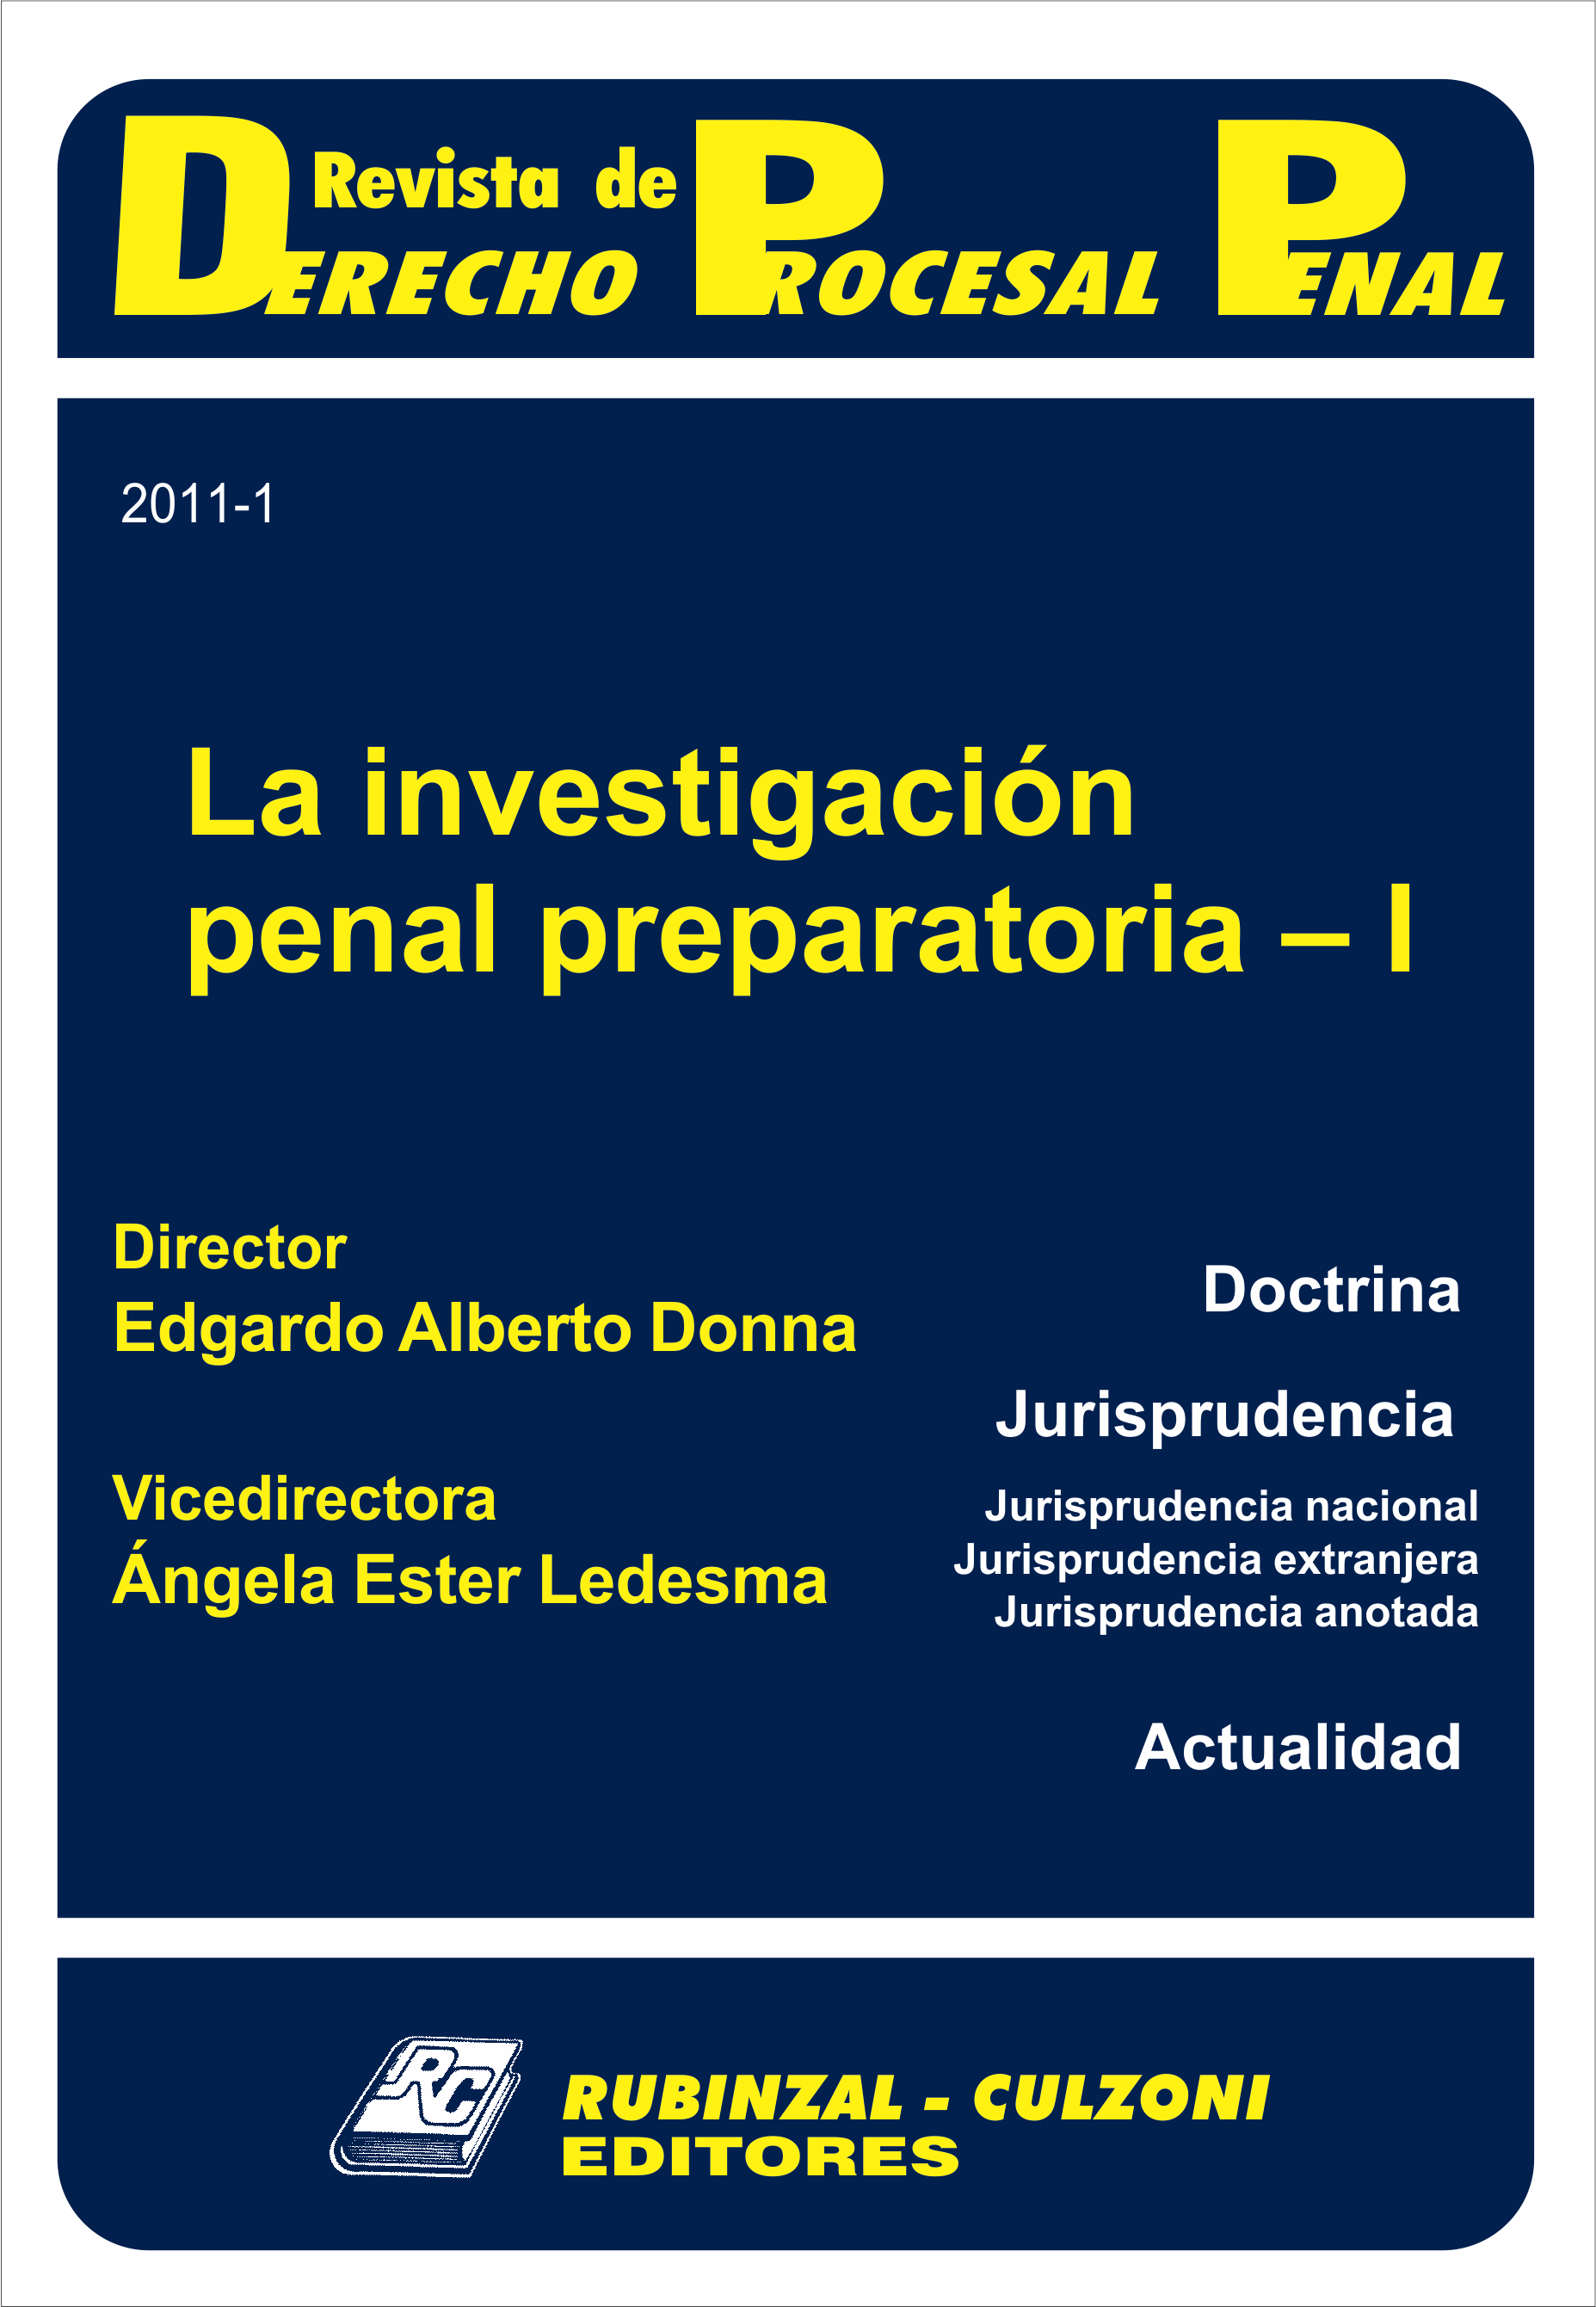 Revista de Derecho Procesal Penal - La investigación penal preparatoria - I.